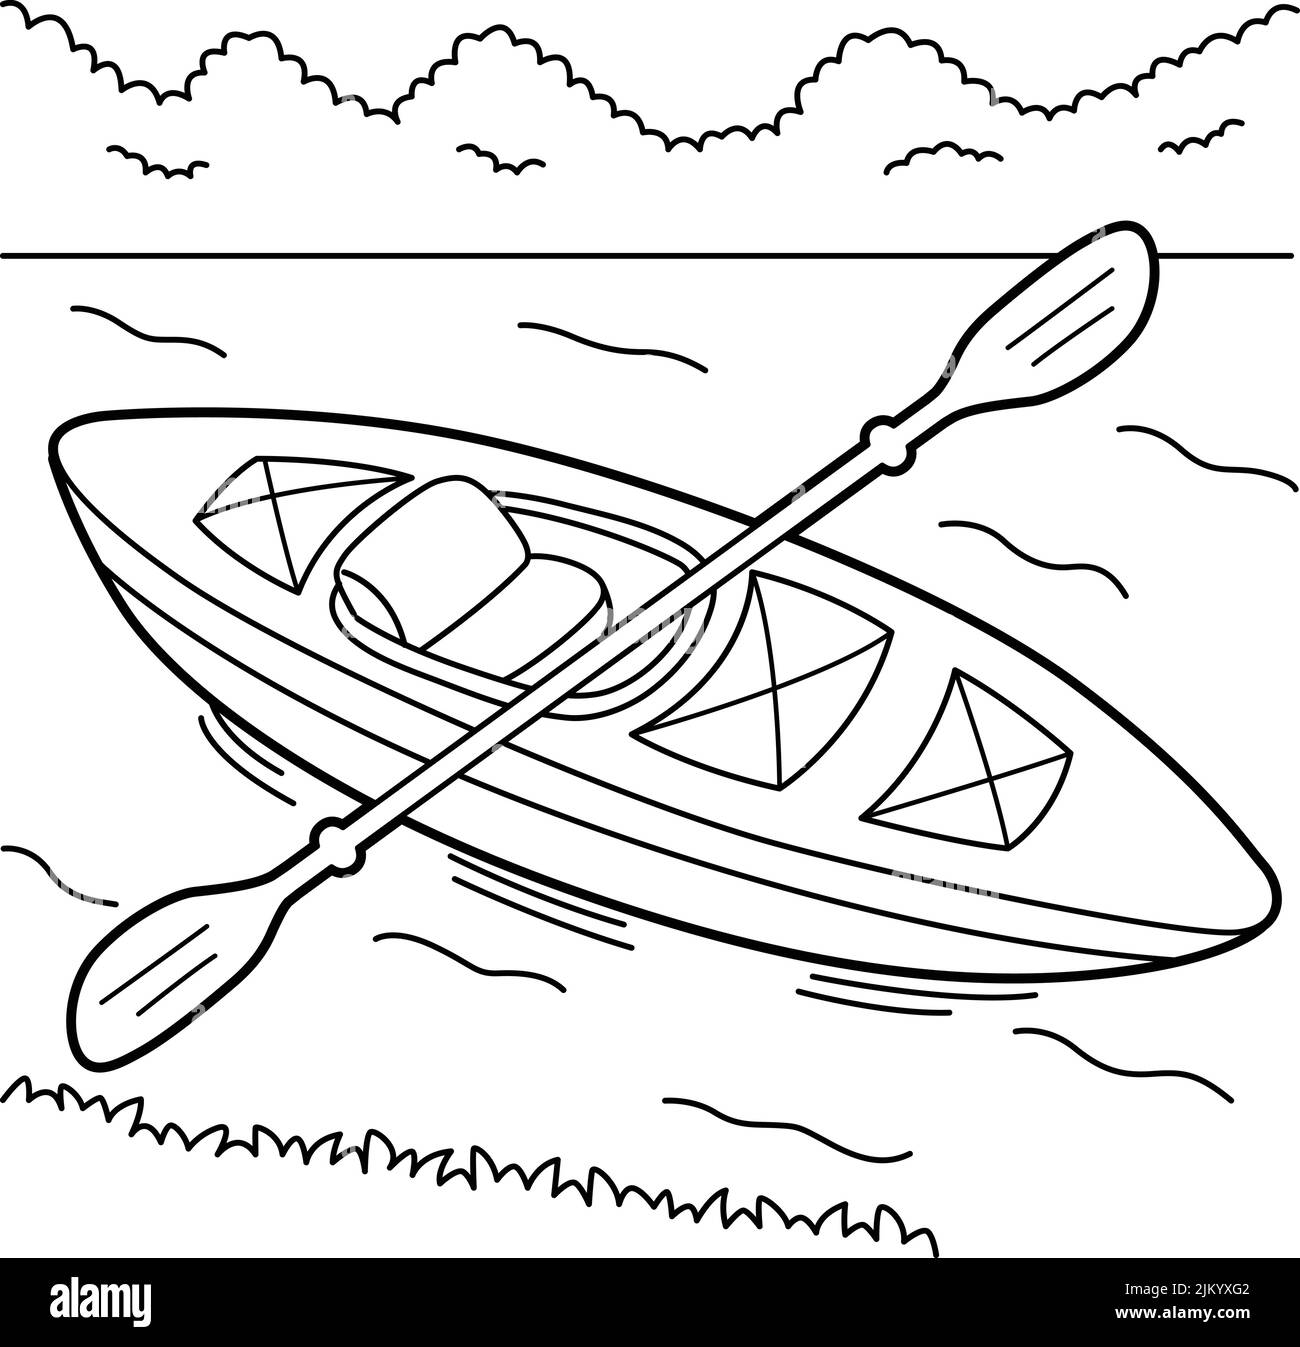 Page de coloriage de véhicule de kayak pour enfants Illustration de Vecteur